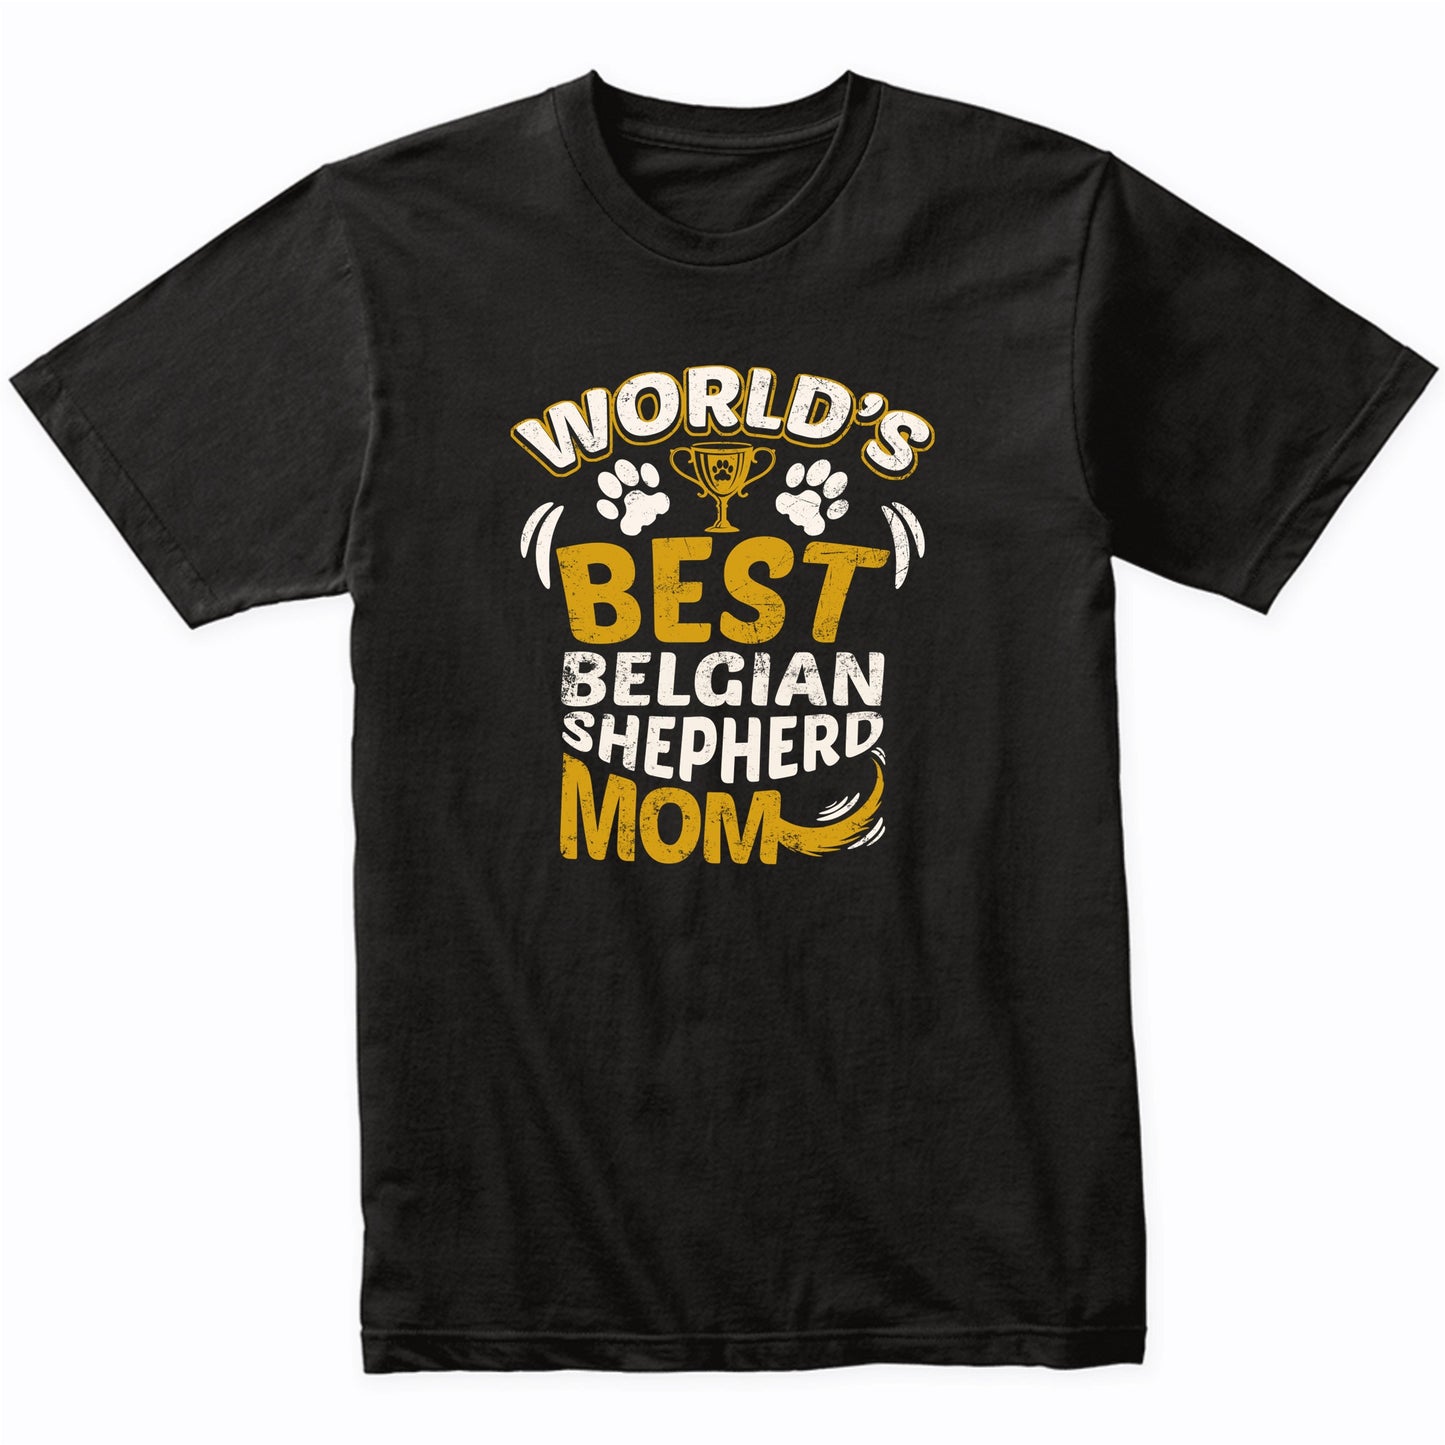 World's Best Belgian Shepherd Mom Graphic T-Shirt